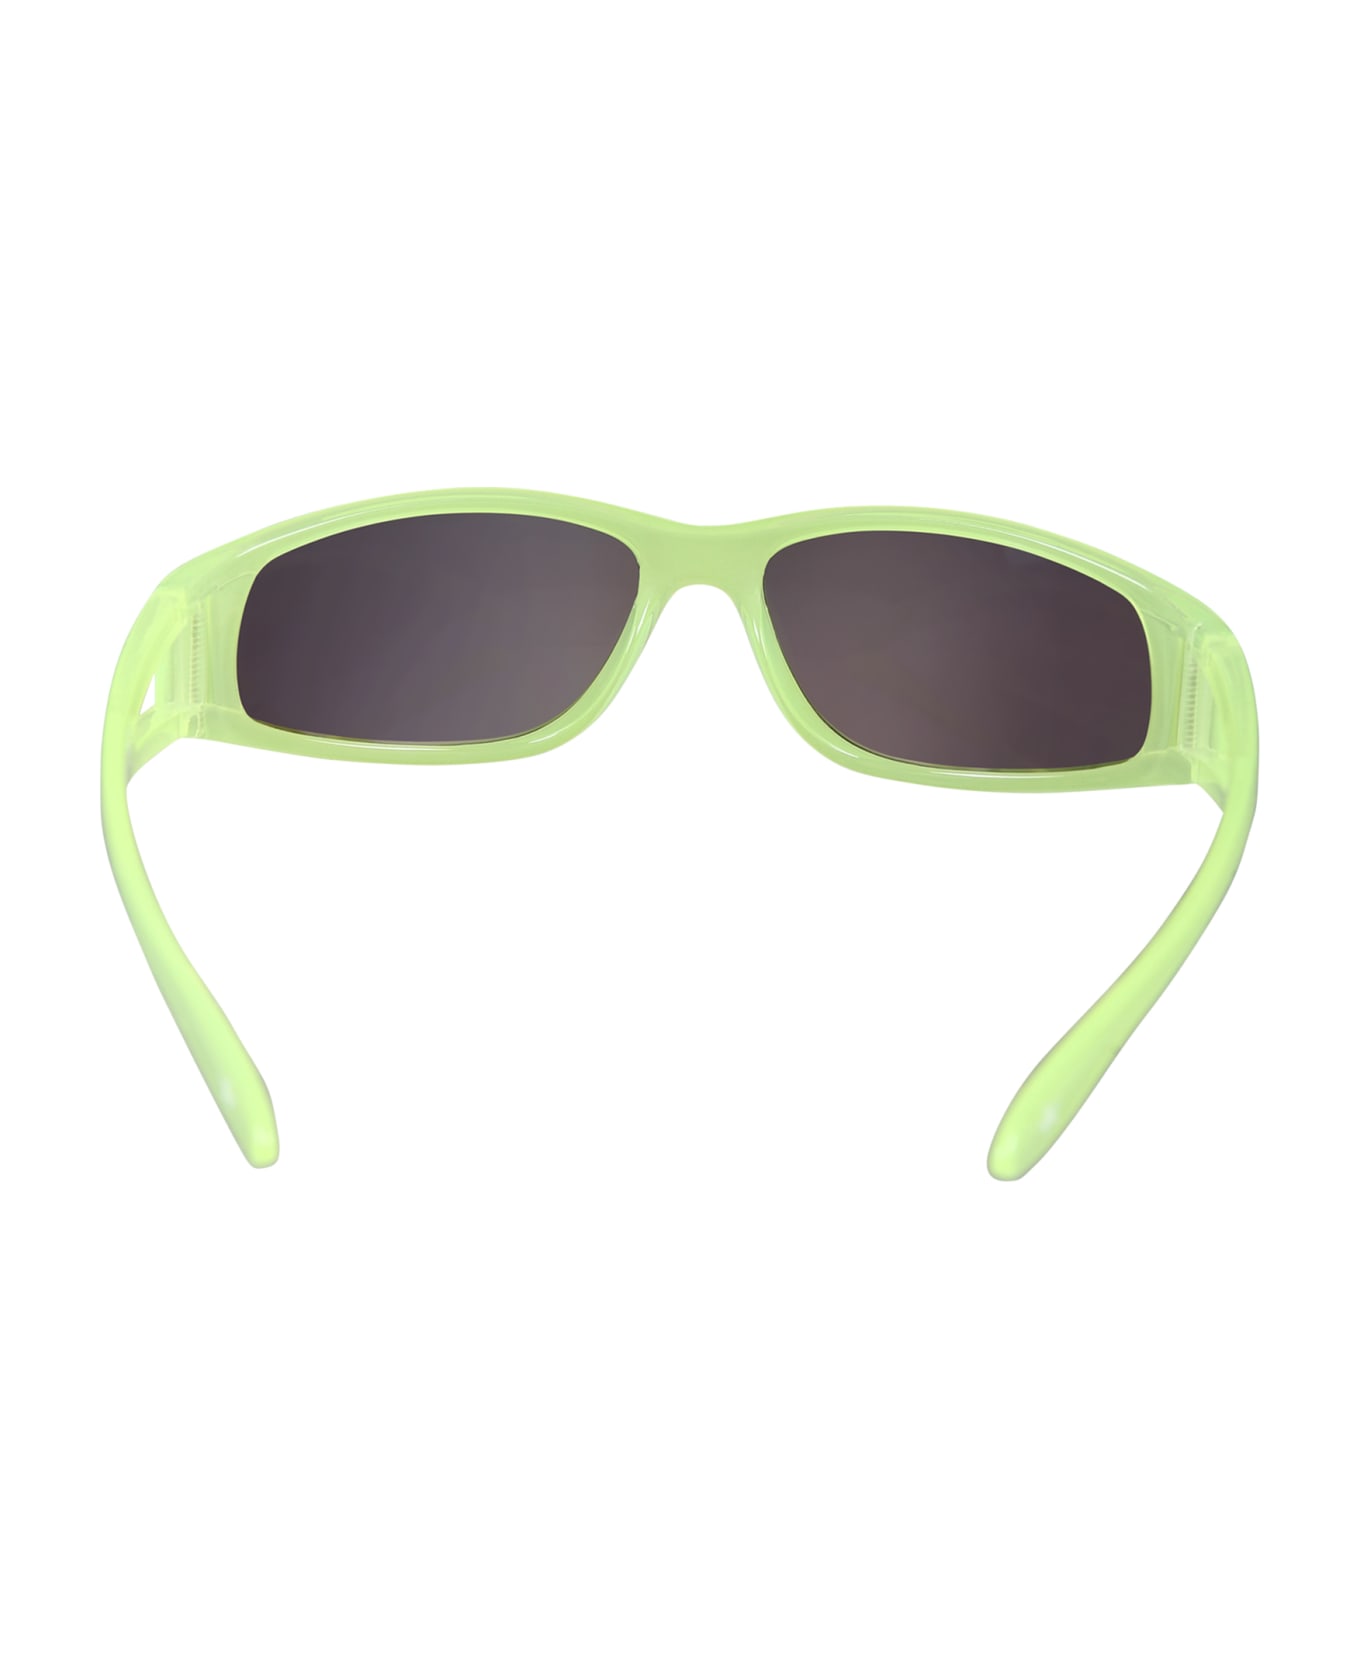 Molo Fluorescent Yellow Soso Sunglasses For Kids - Green